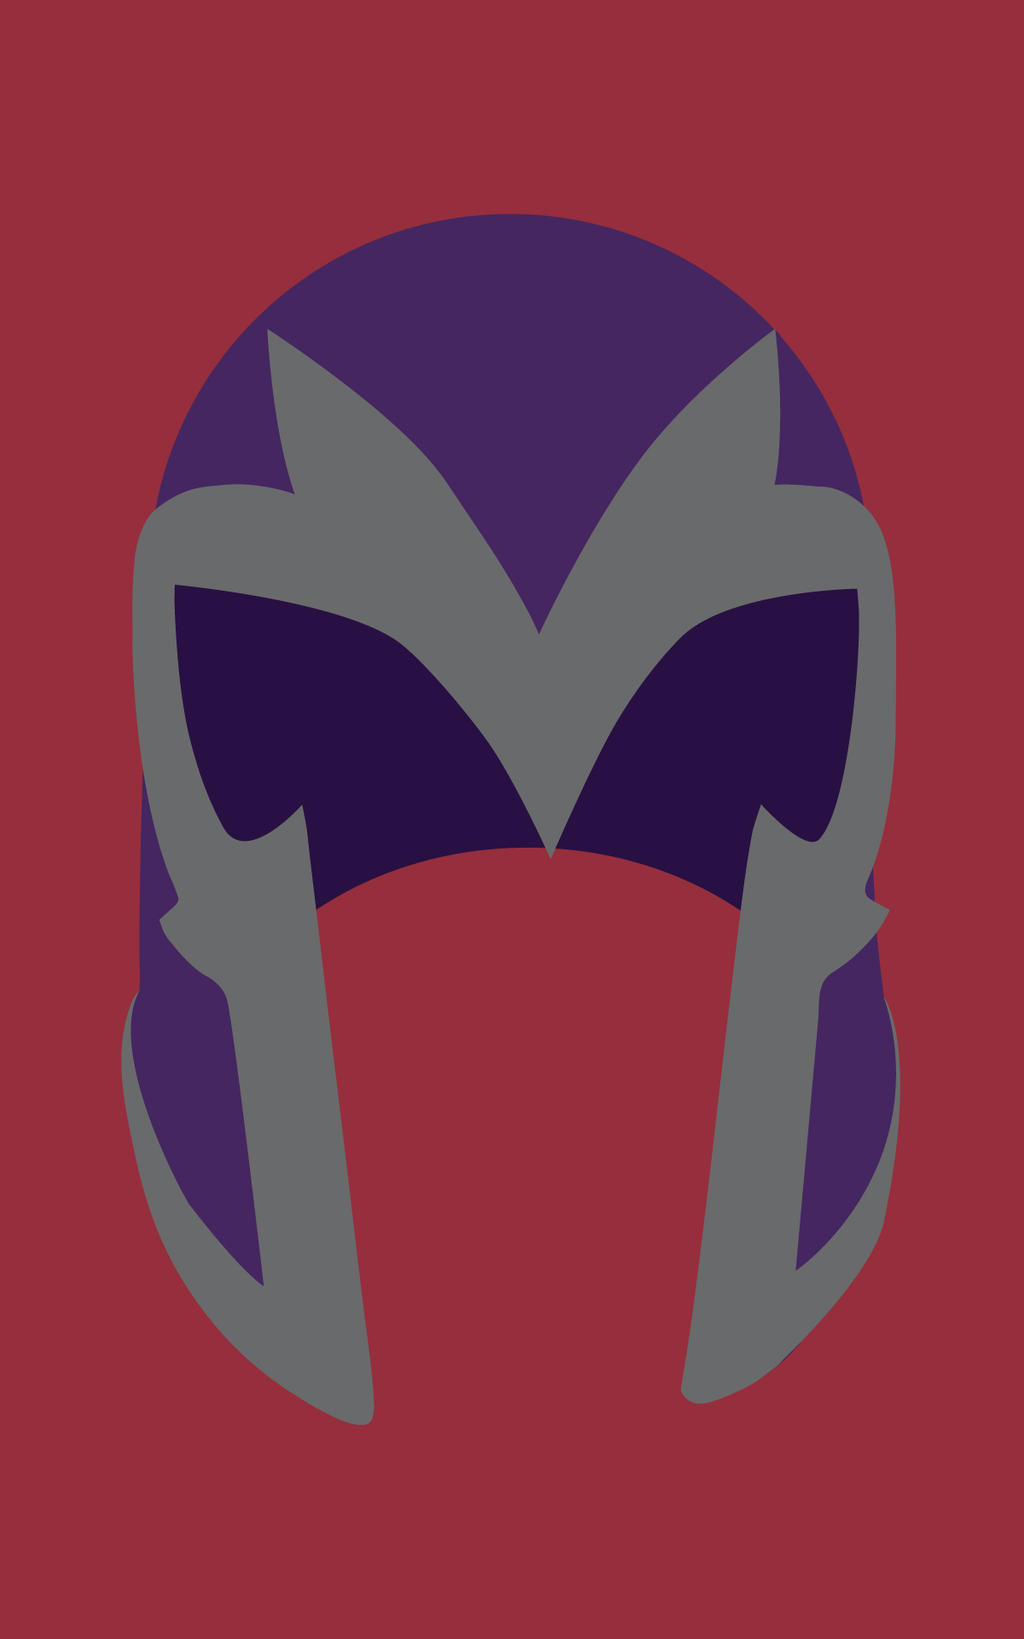 Magneto's-Helmet